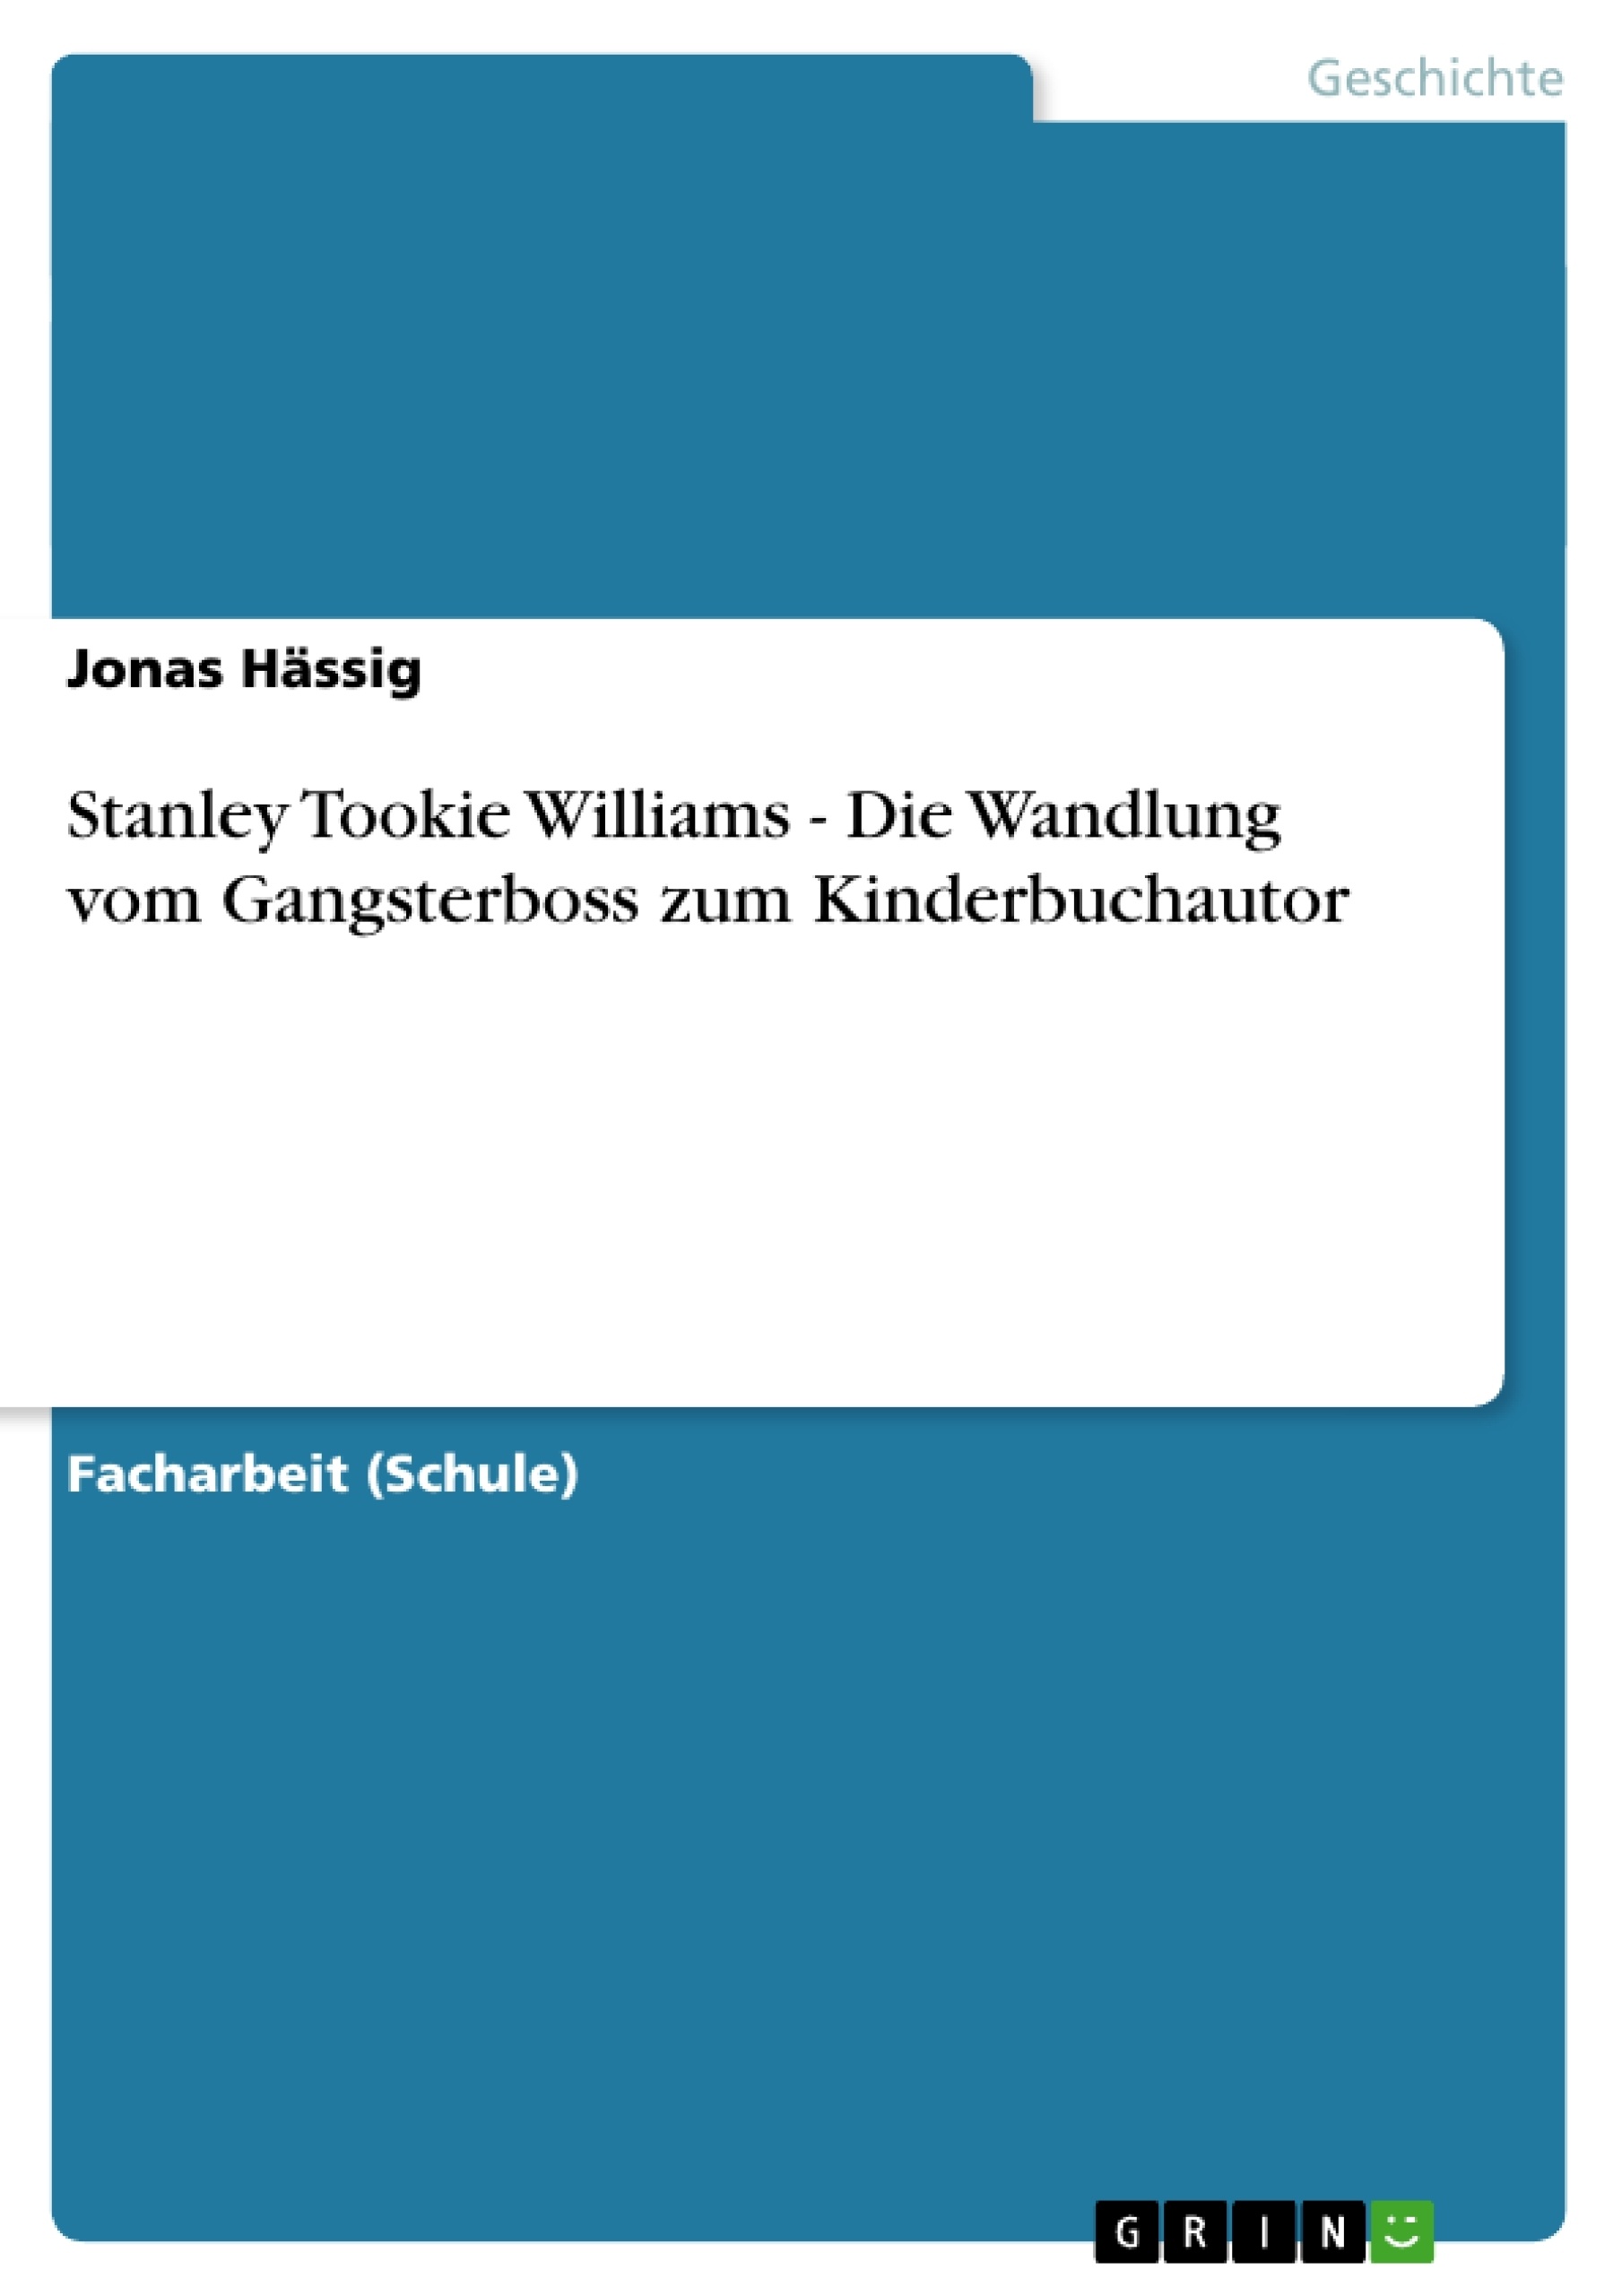 Titre: Stanley Tookie Williams - Die Wandlung vom Gangsterboss zum Kinderbuchautor